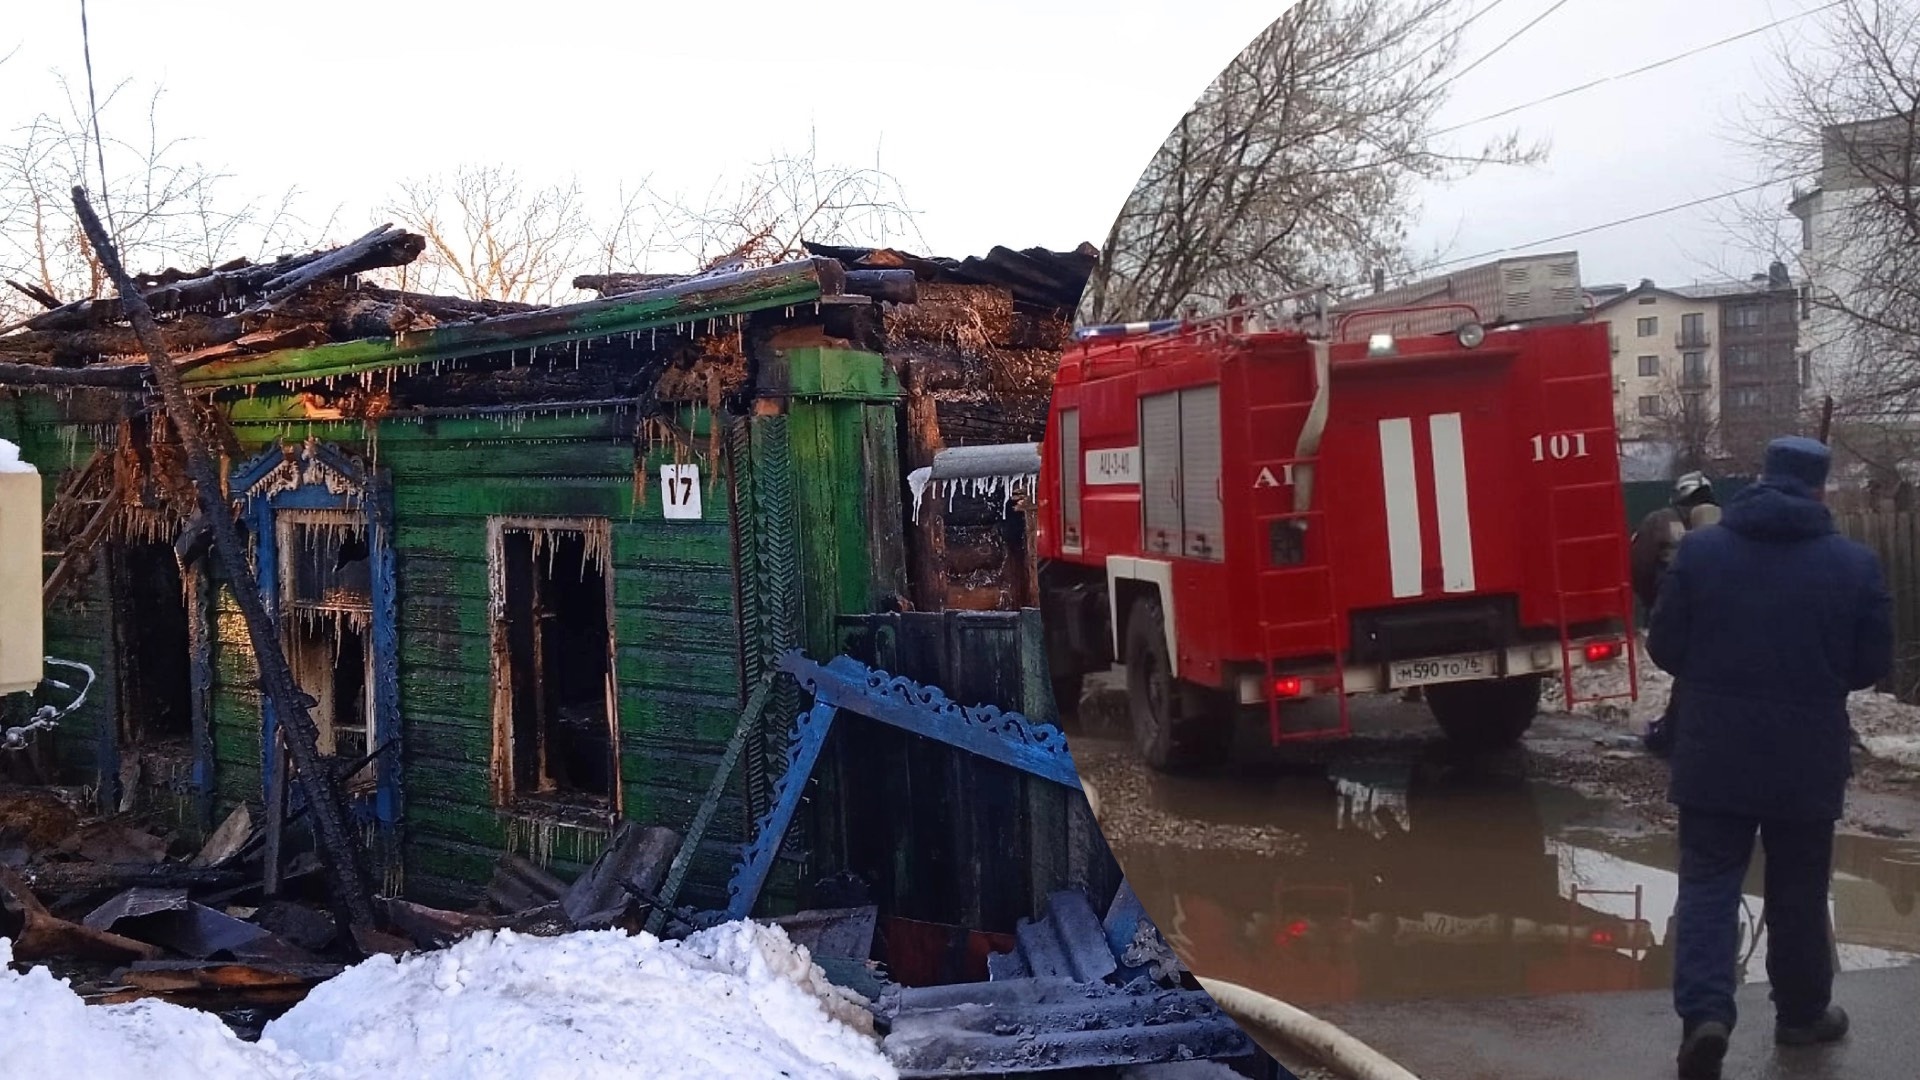 "Погибла моя мама": в Ярославле после пожара без крыши над головой осталась целая семья